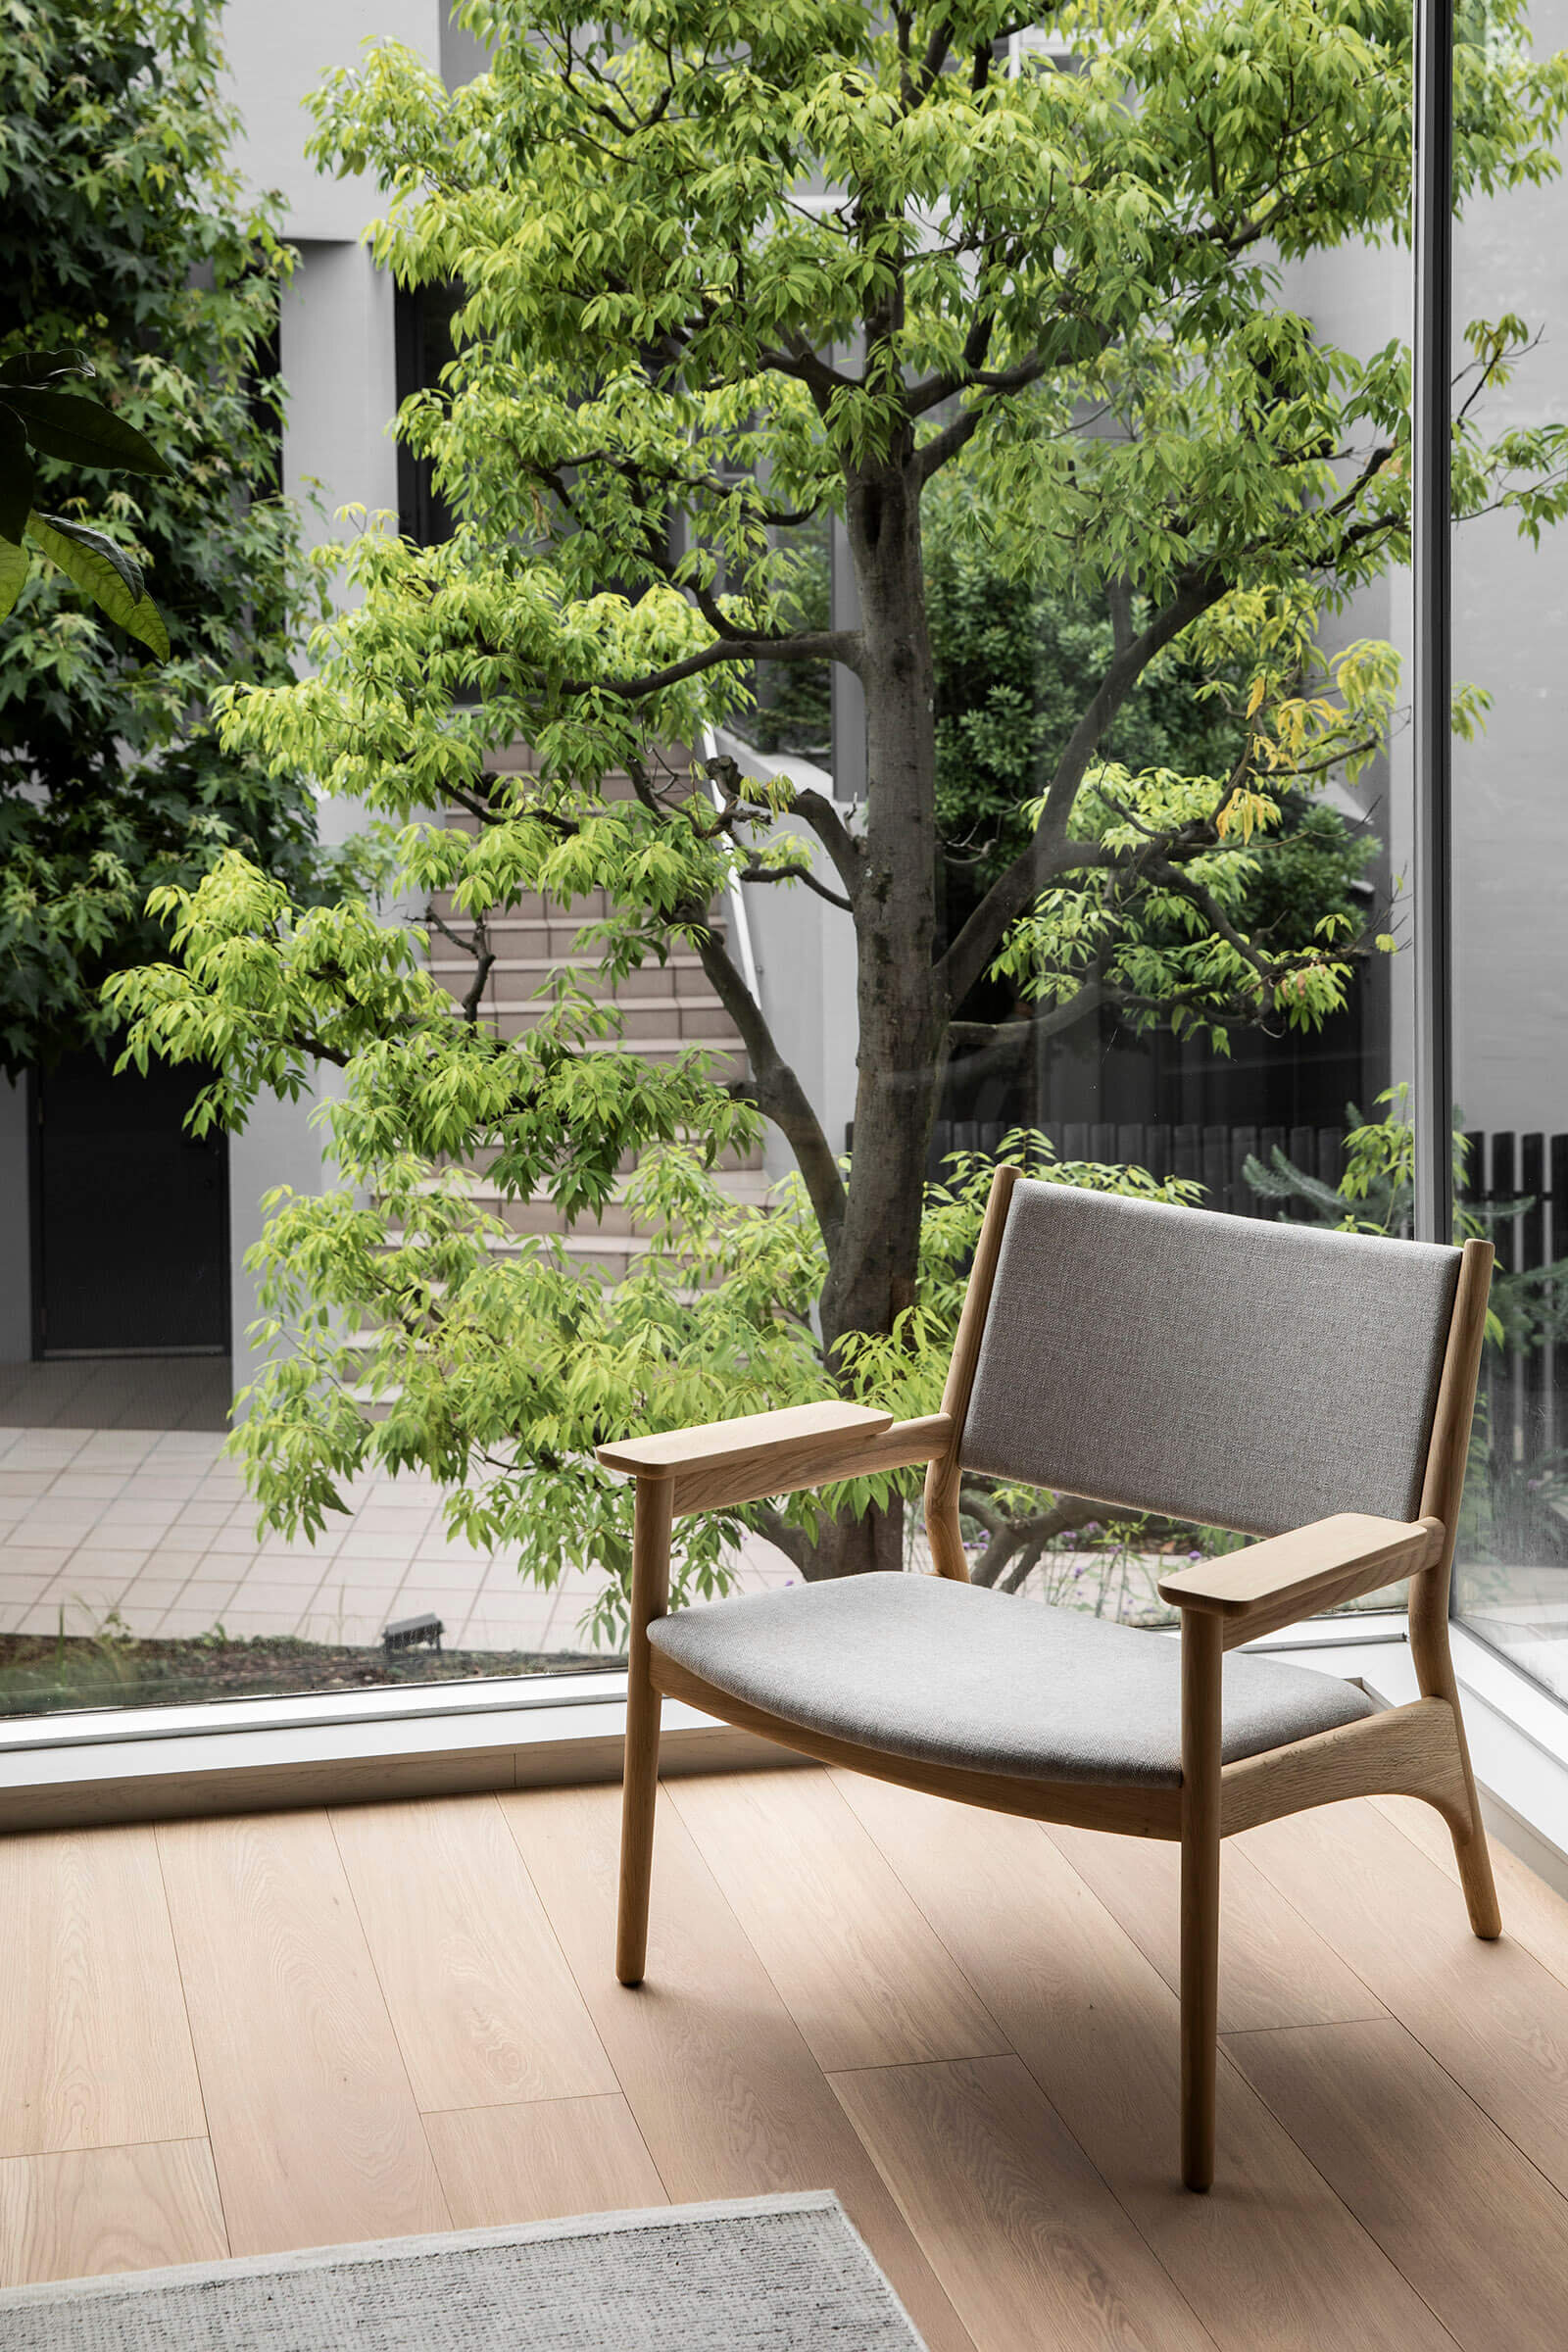 keiji-ashizawa-design-kinuta-terrace-tokyo-japan-residence-interior-design-idreit-4956.jpg